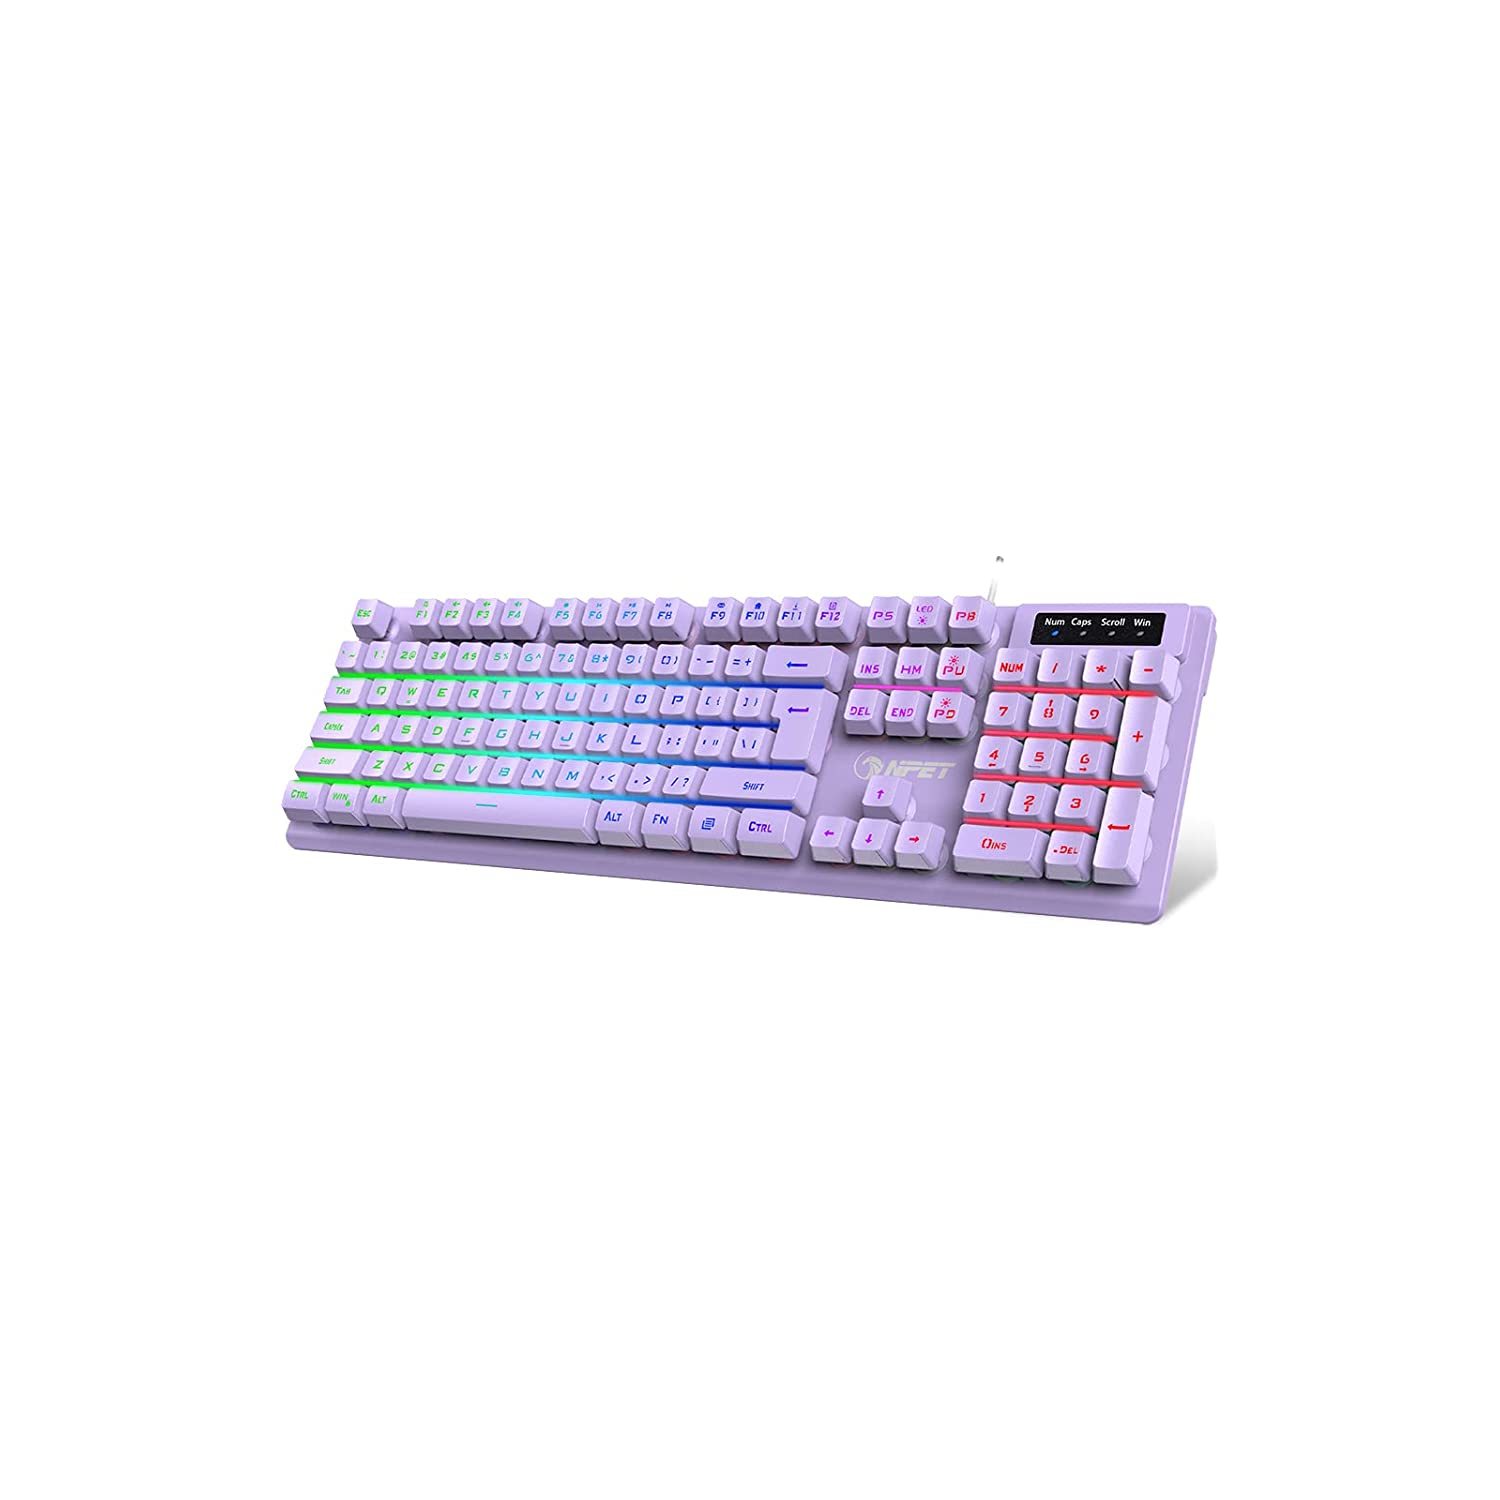 Primary image for K10 Gaming Keyboard, Led Backlit, Spill-Resistant Design, Multimedia Keys, Quiet